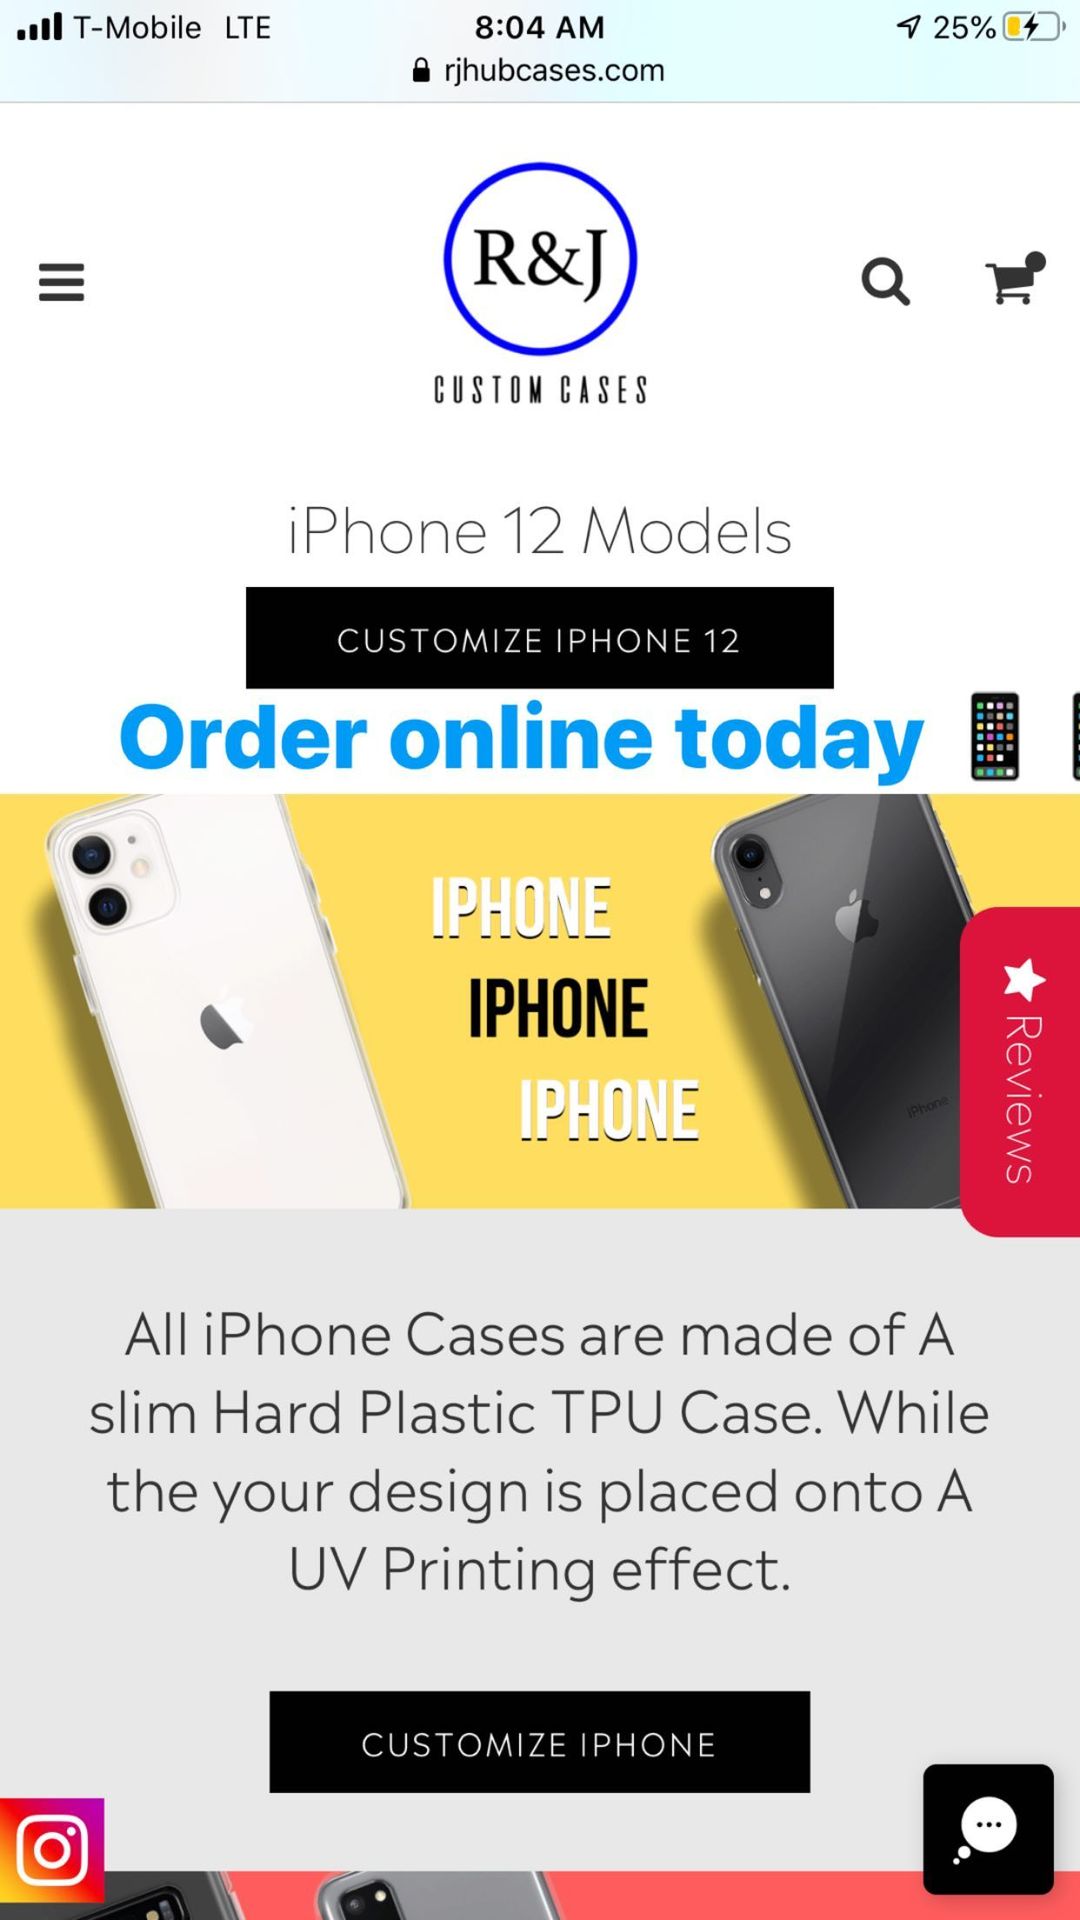 Custom iPhone 11 Pro Max Case, Custom Slim Case